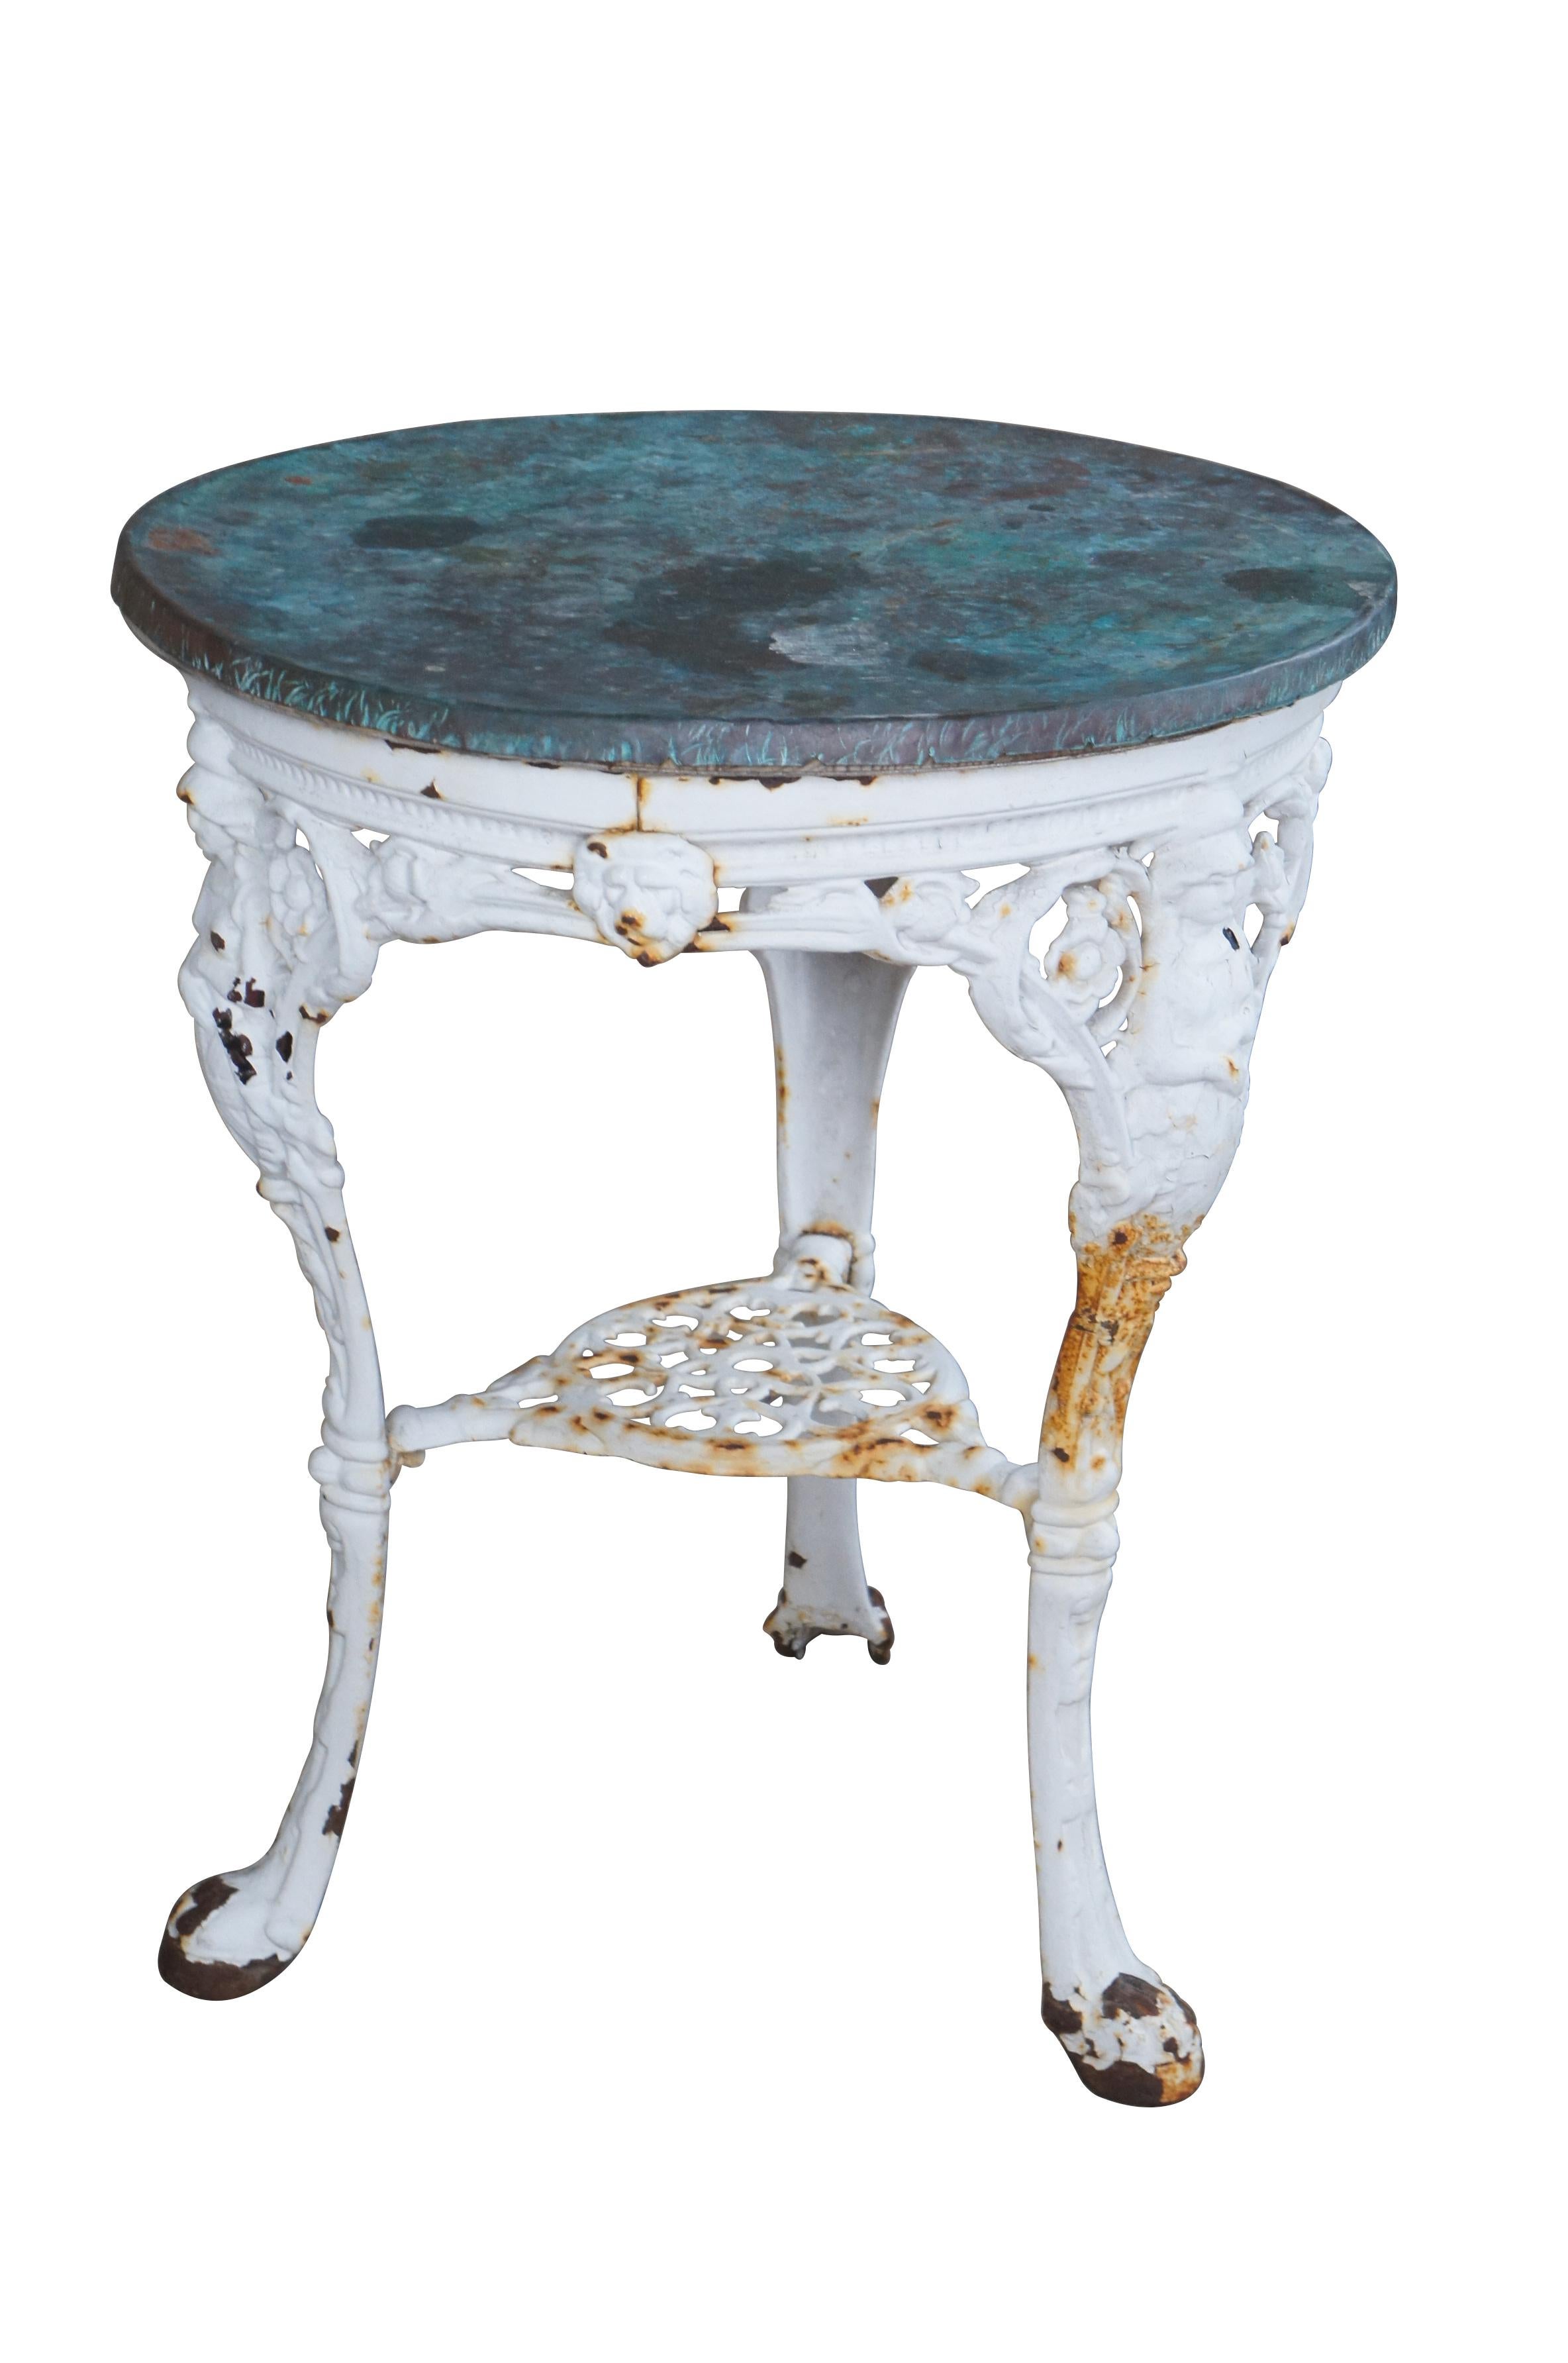 Antiker viktorianischer Gartentisch mit schwerem Gusseisensockel mit netzartigem Blumen-/Löwenkopf-/Figurenmotiv und runder kupferverkleideter Platte.  Auf den drei oberen Beinen ist eine figurale 